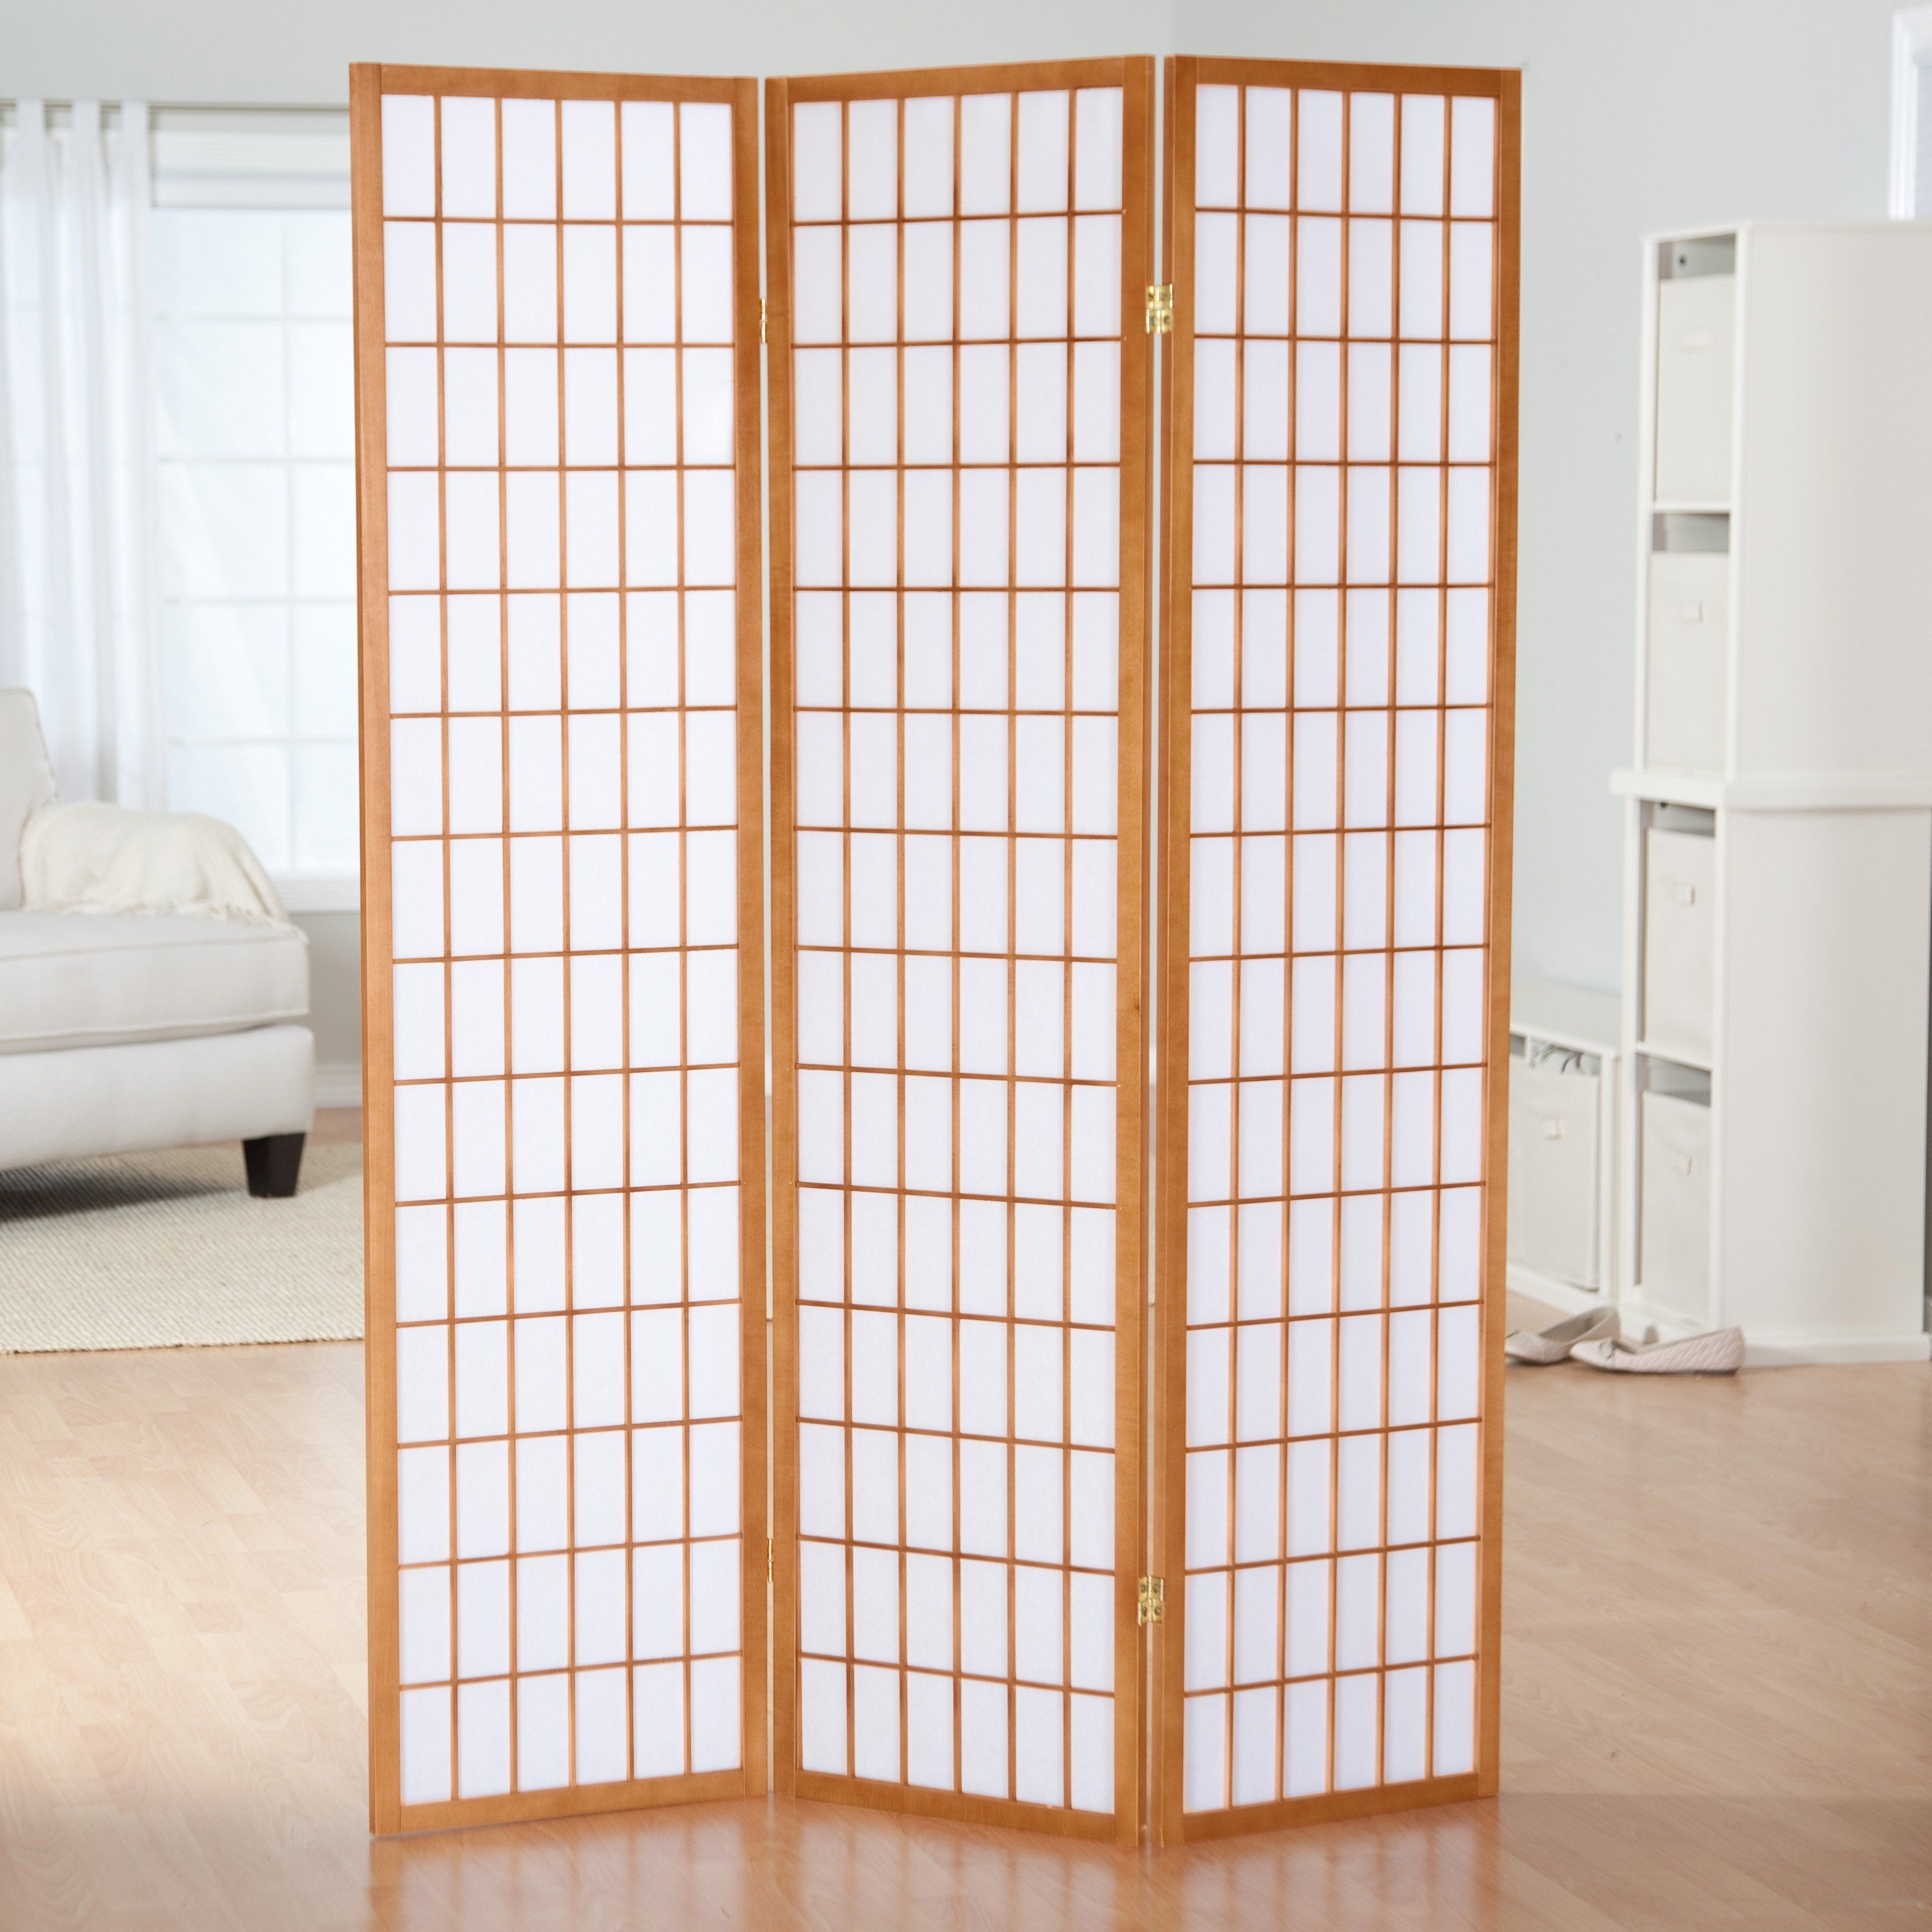 Details about   HONGVILLE Shoji 3-12 Panel Floral Prints Screen Design Wood Framed Room Divider 